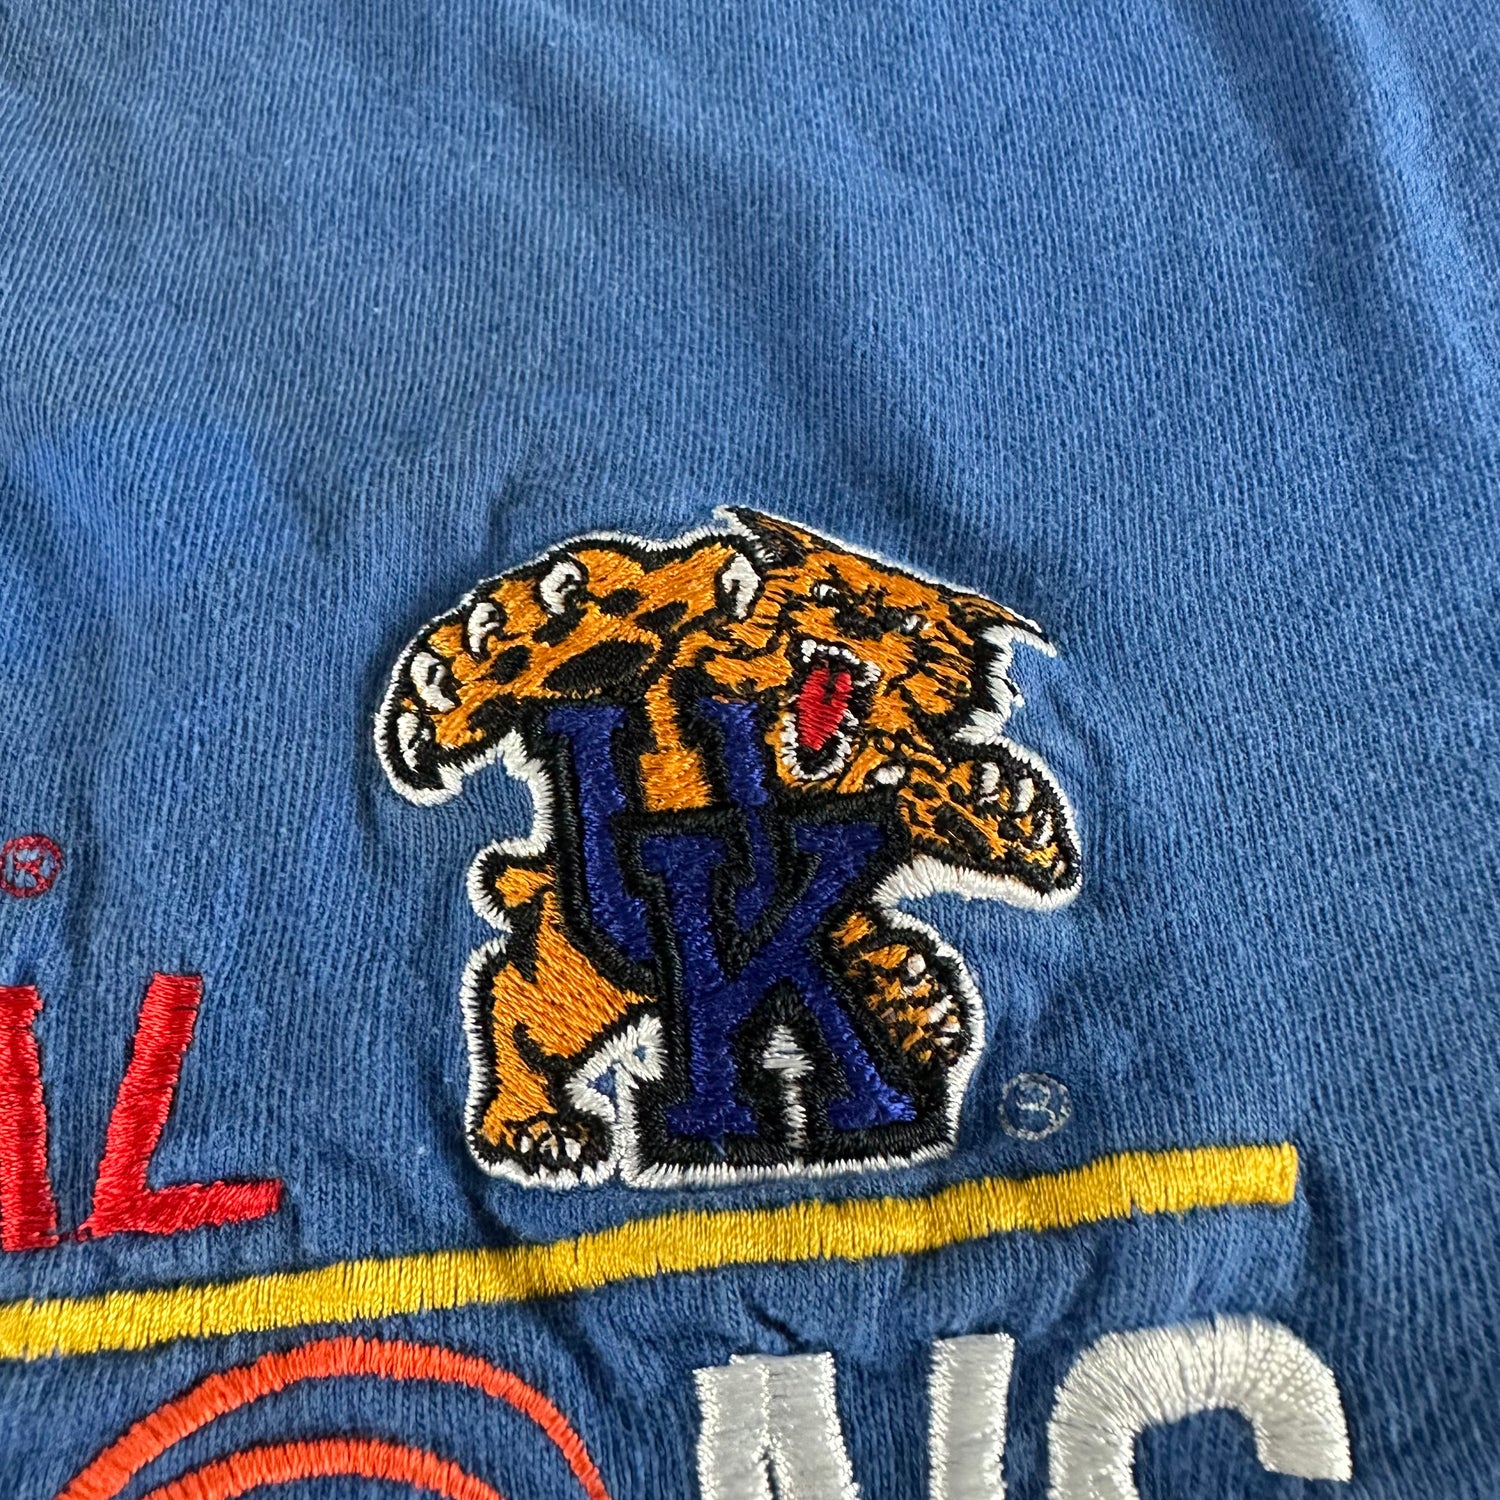 Vintage 1998 University of Kentucky T-shirt size XL